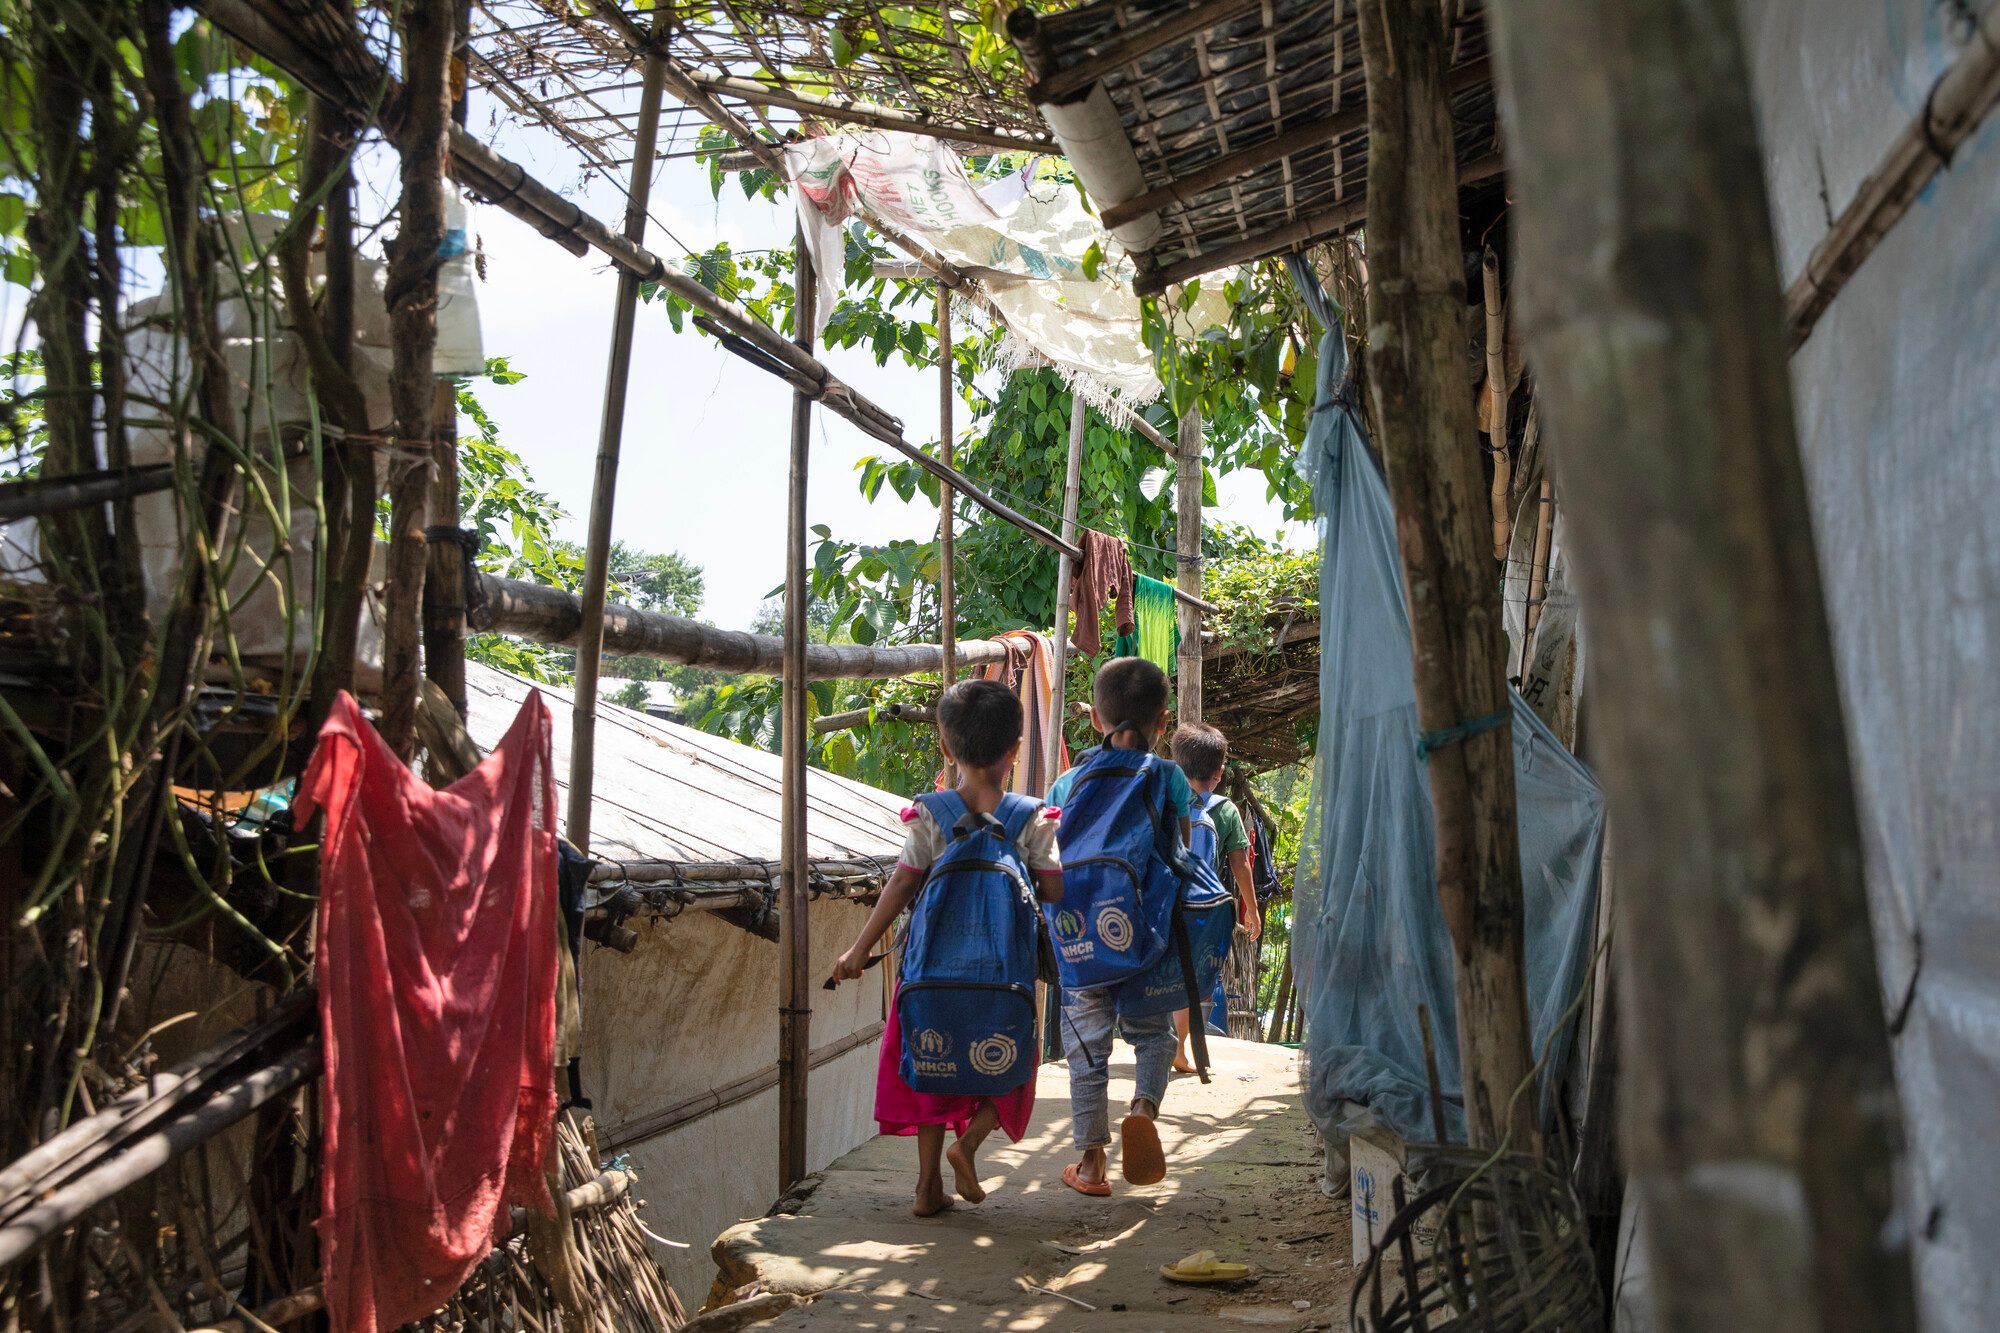 Children on their way to school in Cox's Bazar.